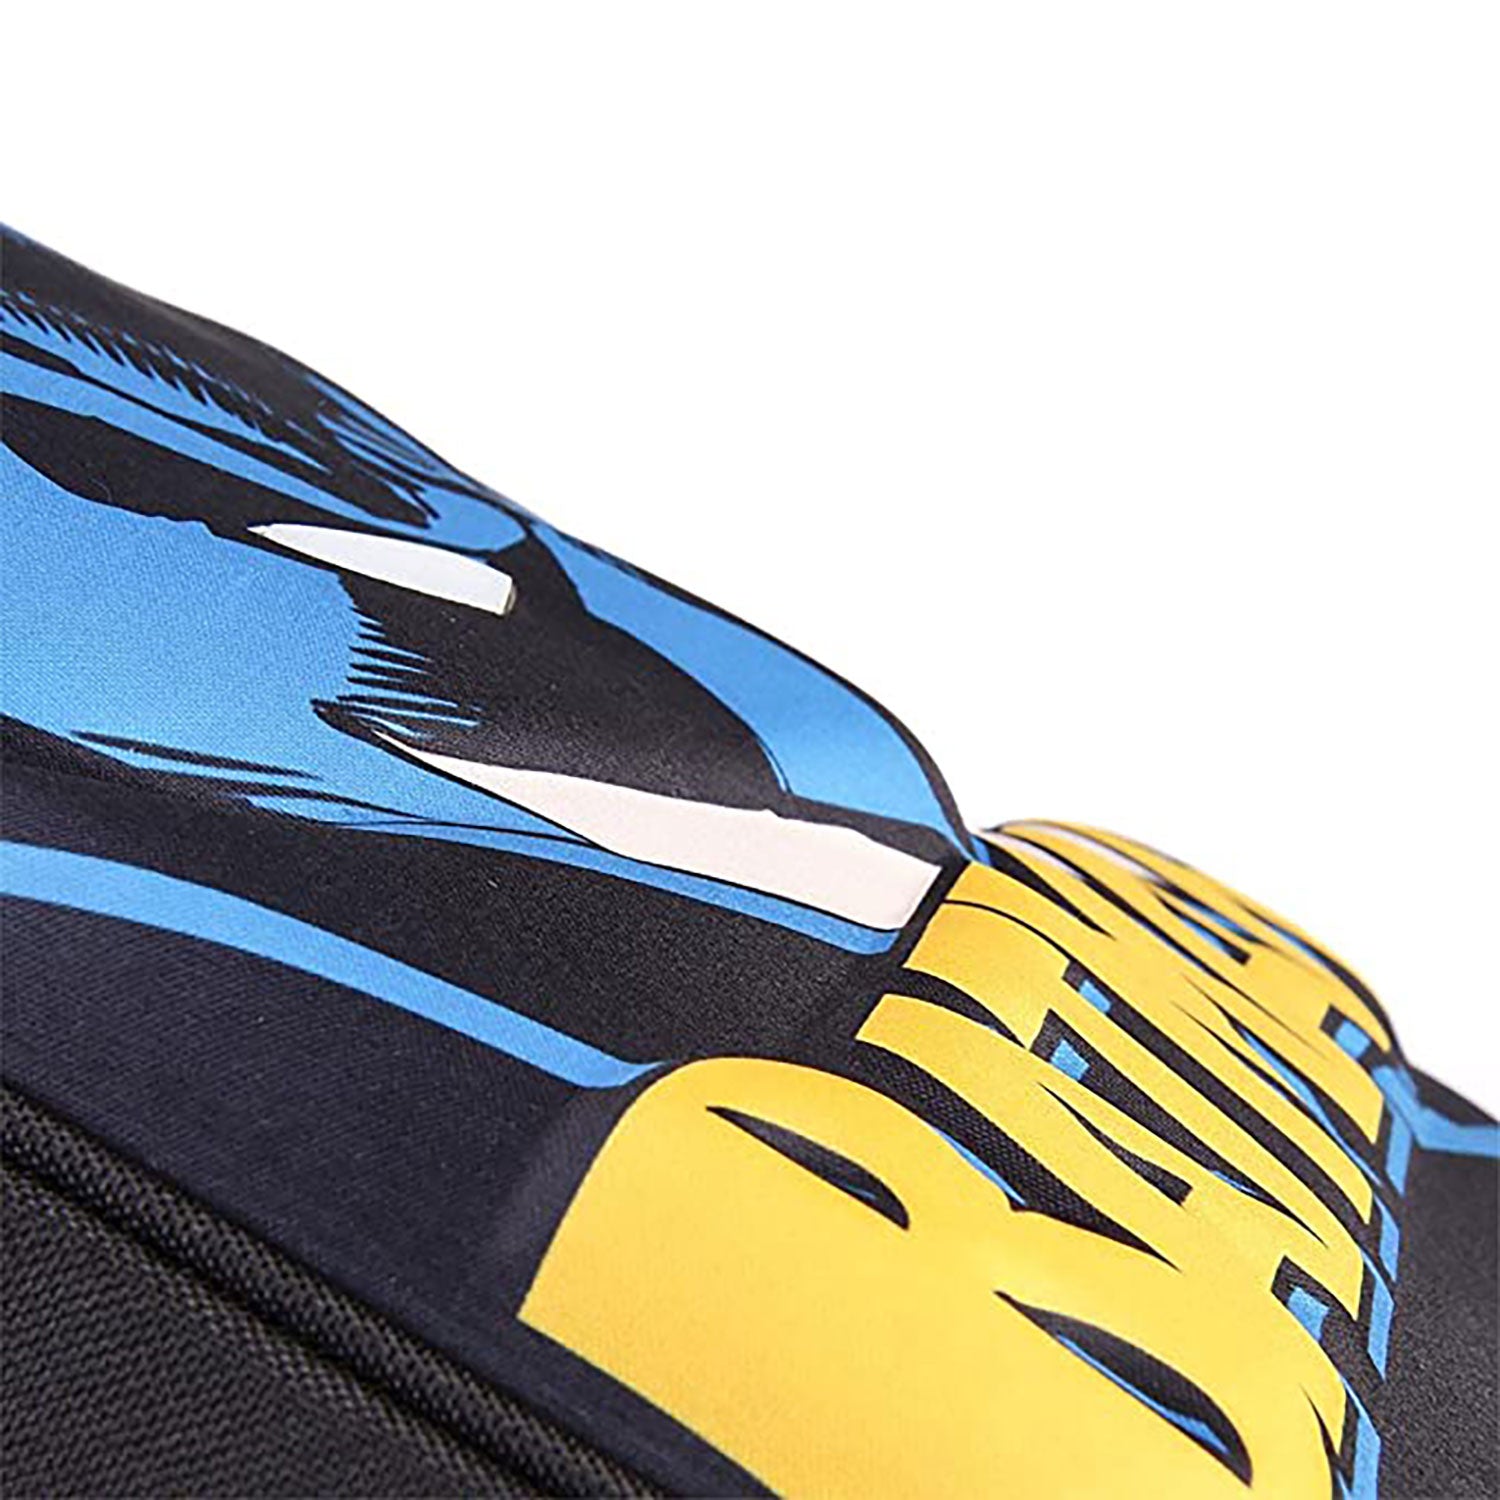 Zaino Batman DC Comics zainetto ufficiale con bretelle bambino scuola asilo 5540